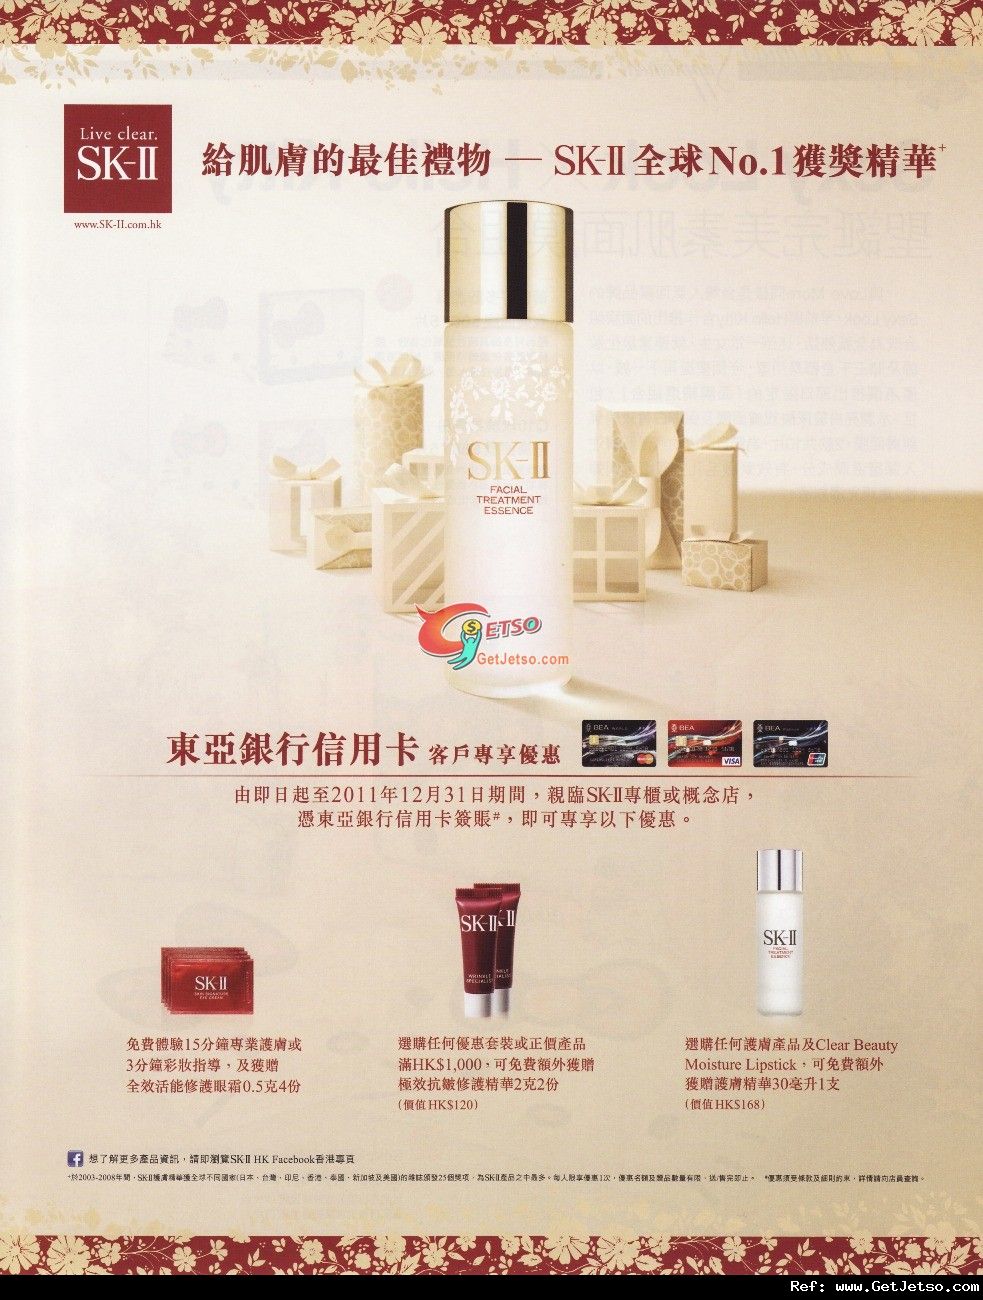 東亞信用卡享SK-II 免費護膚指導及購物優惠(至11年12月31日)圖片1